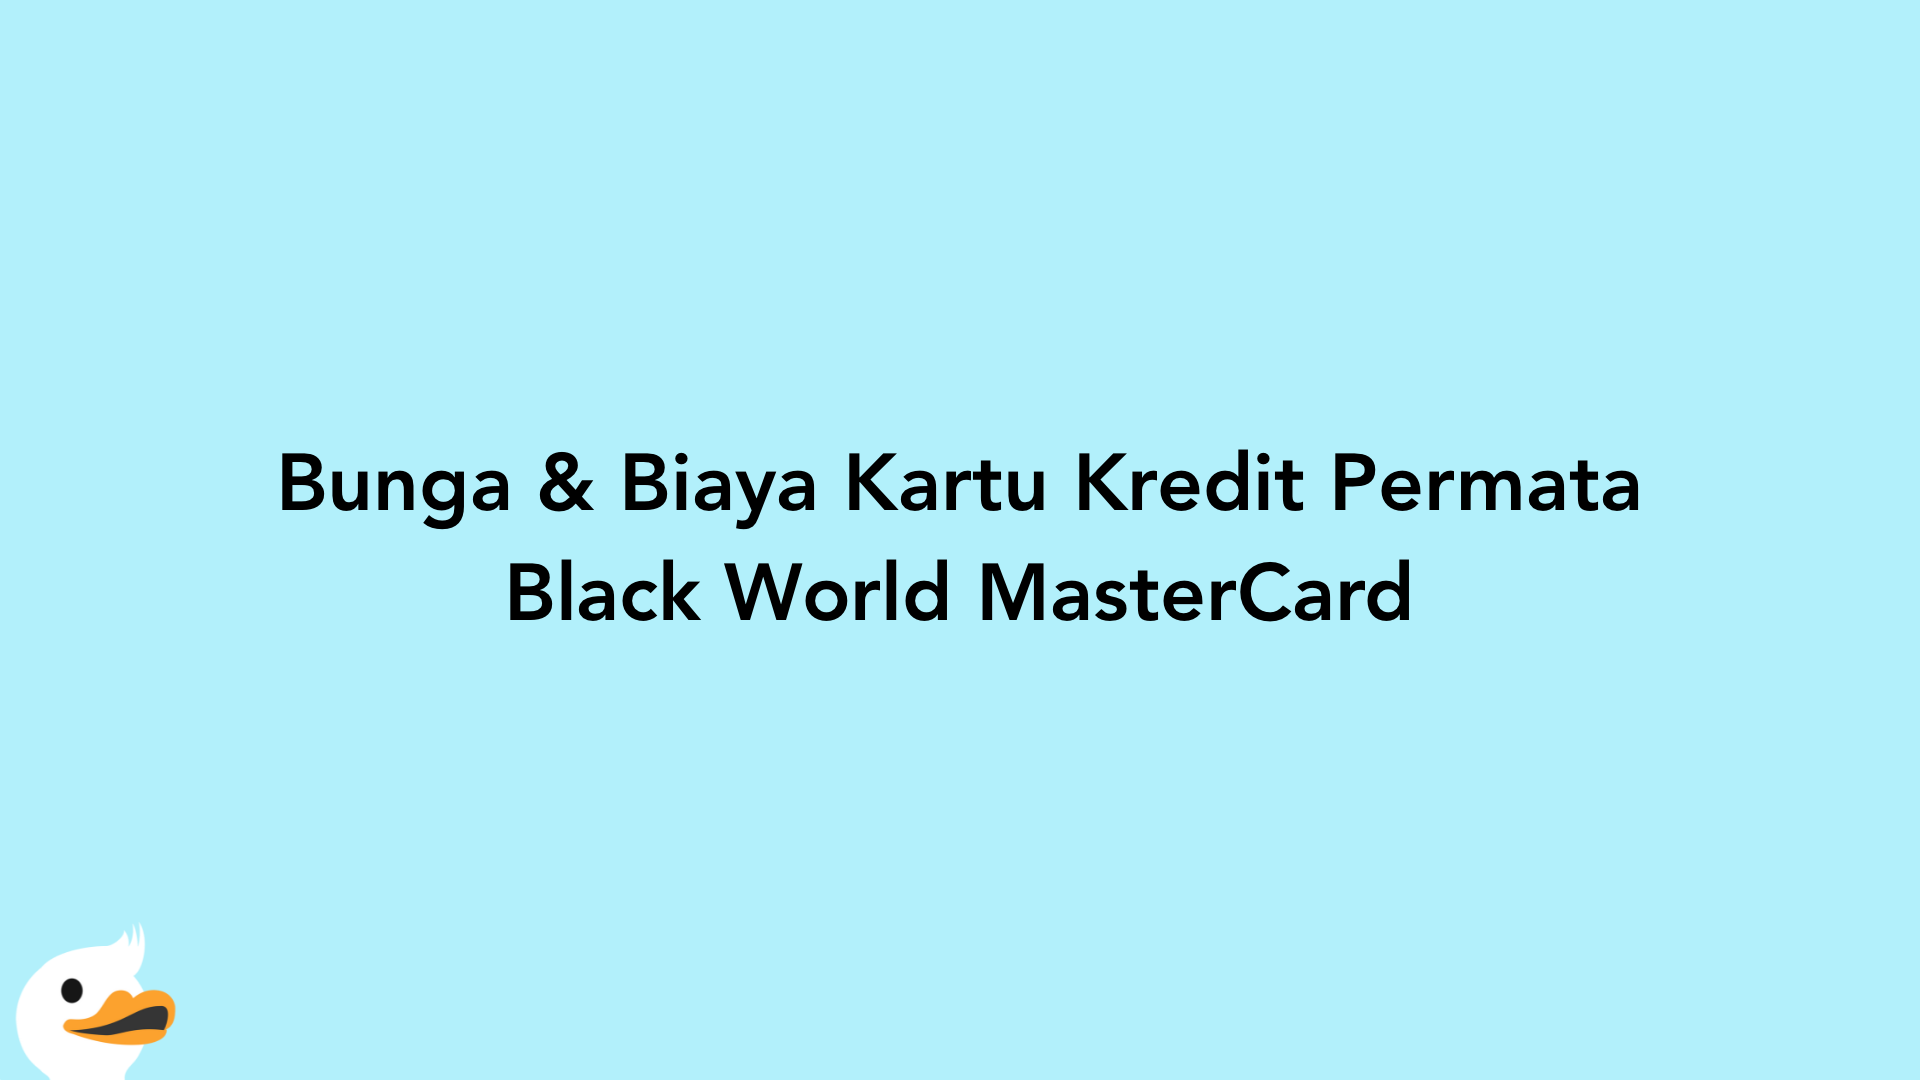 Bunga & Biaya Kartu Kredit Permata Black World MasterCard